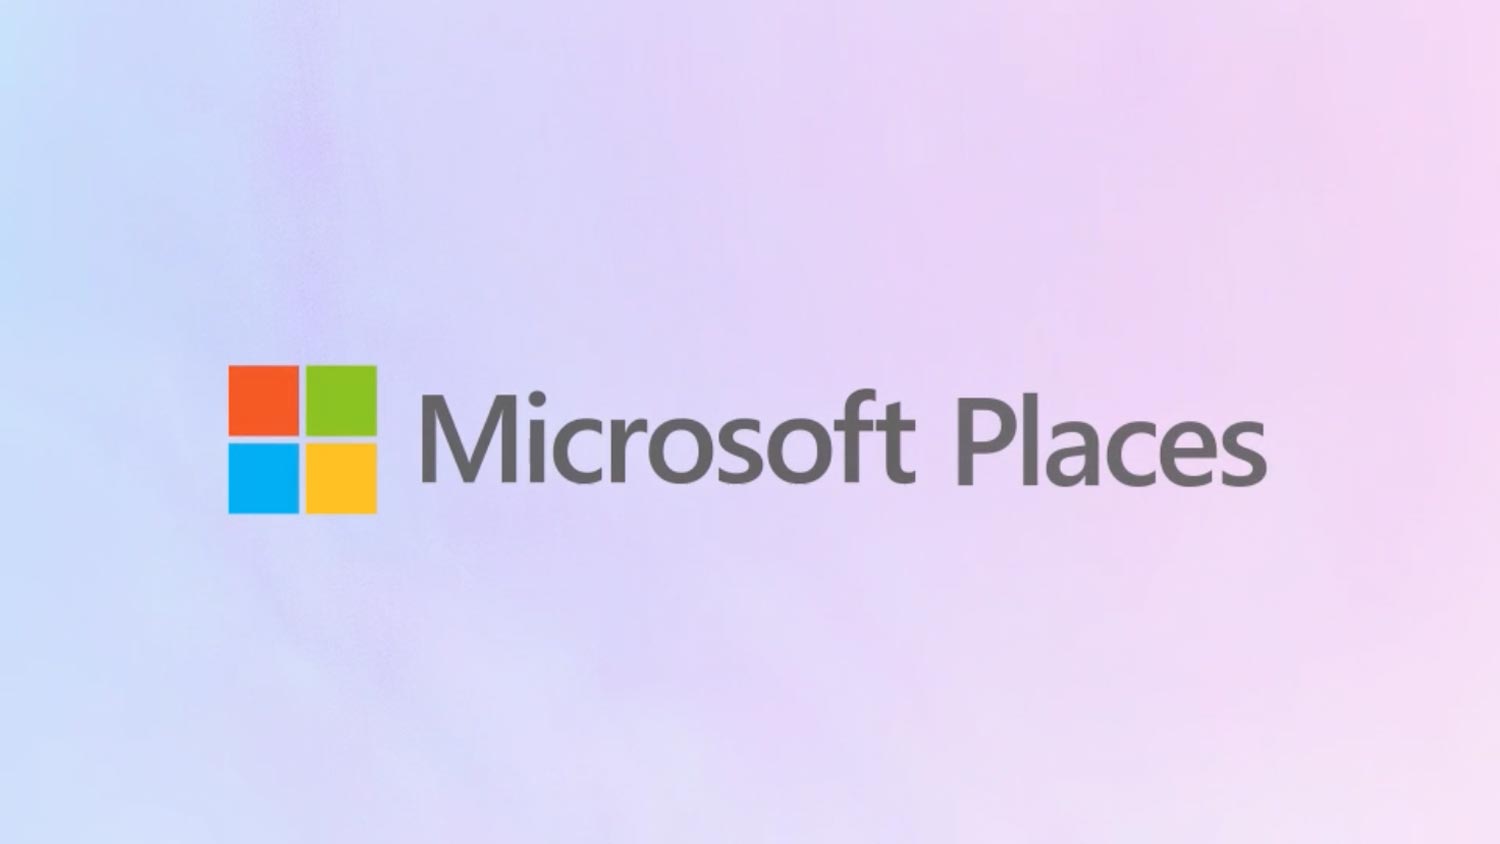 Microsoft Places Ingin Menyelesaikan Cabaran Tempat Kerja Hibrid Di Pejabat Dan Rumah